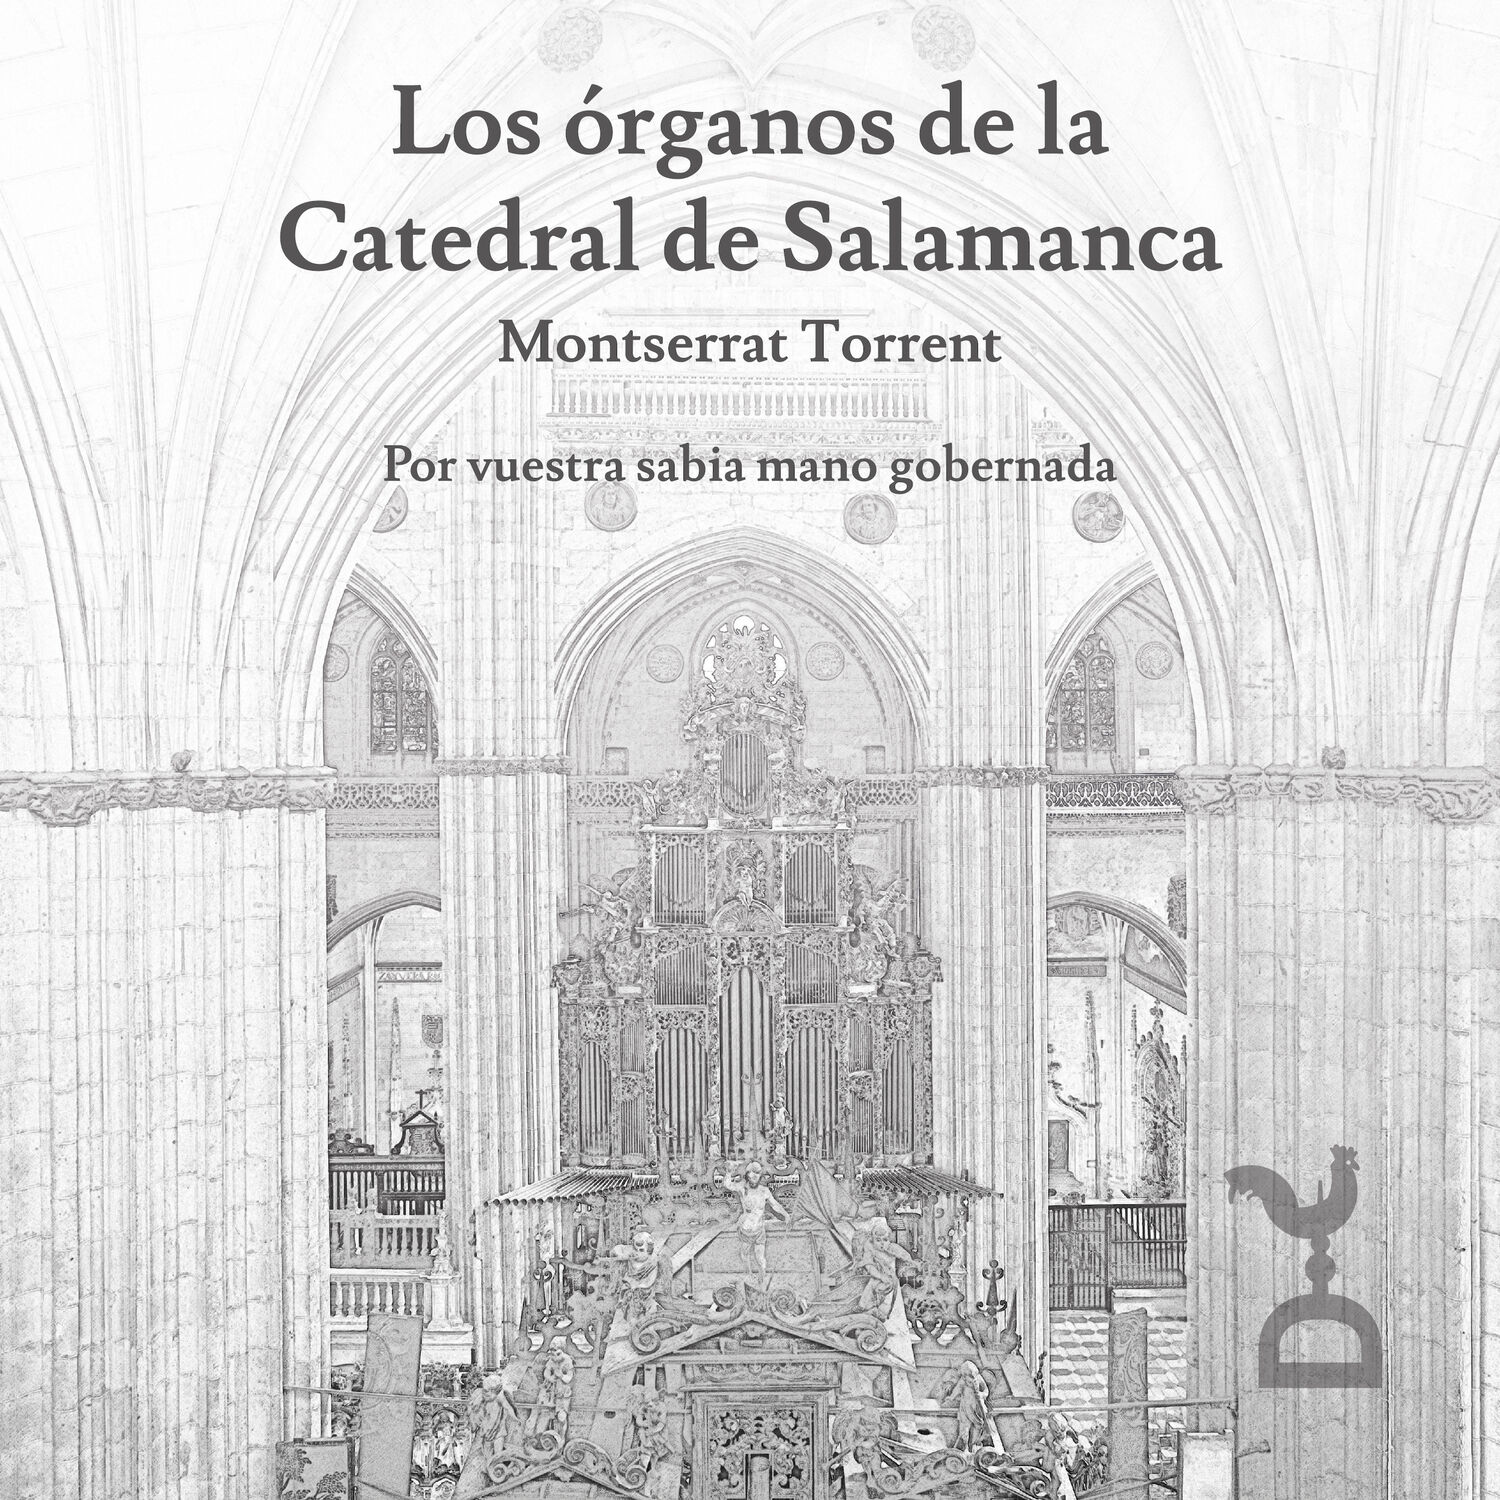 Organos de la Catedral de Salamanca - Montserrat Torrent (no booklet)